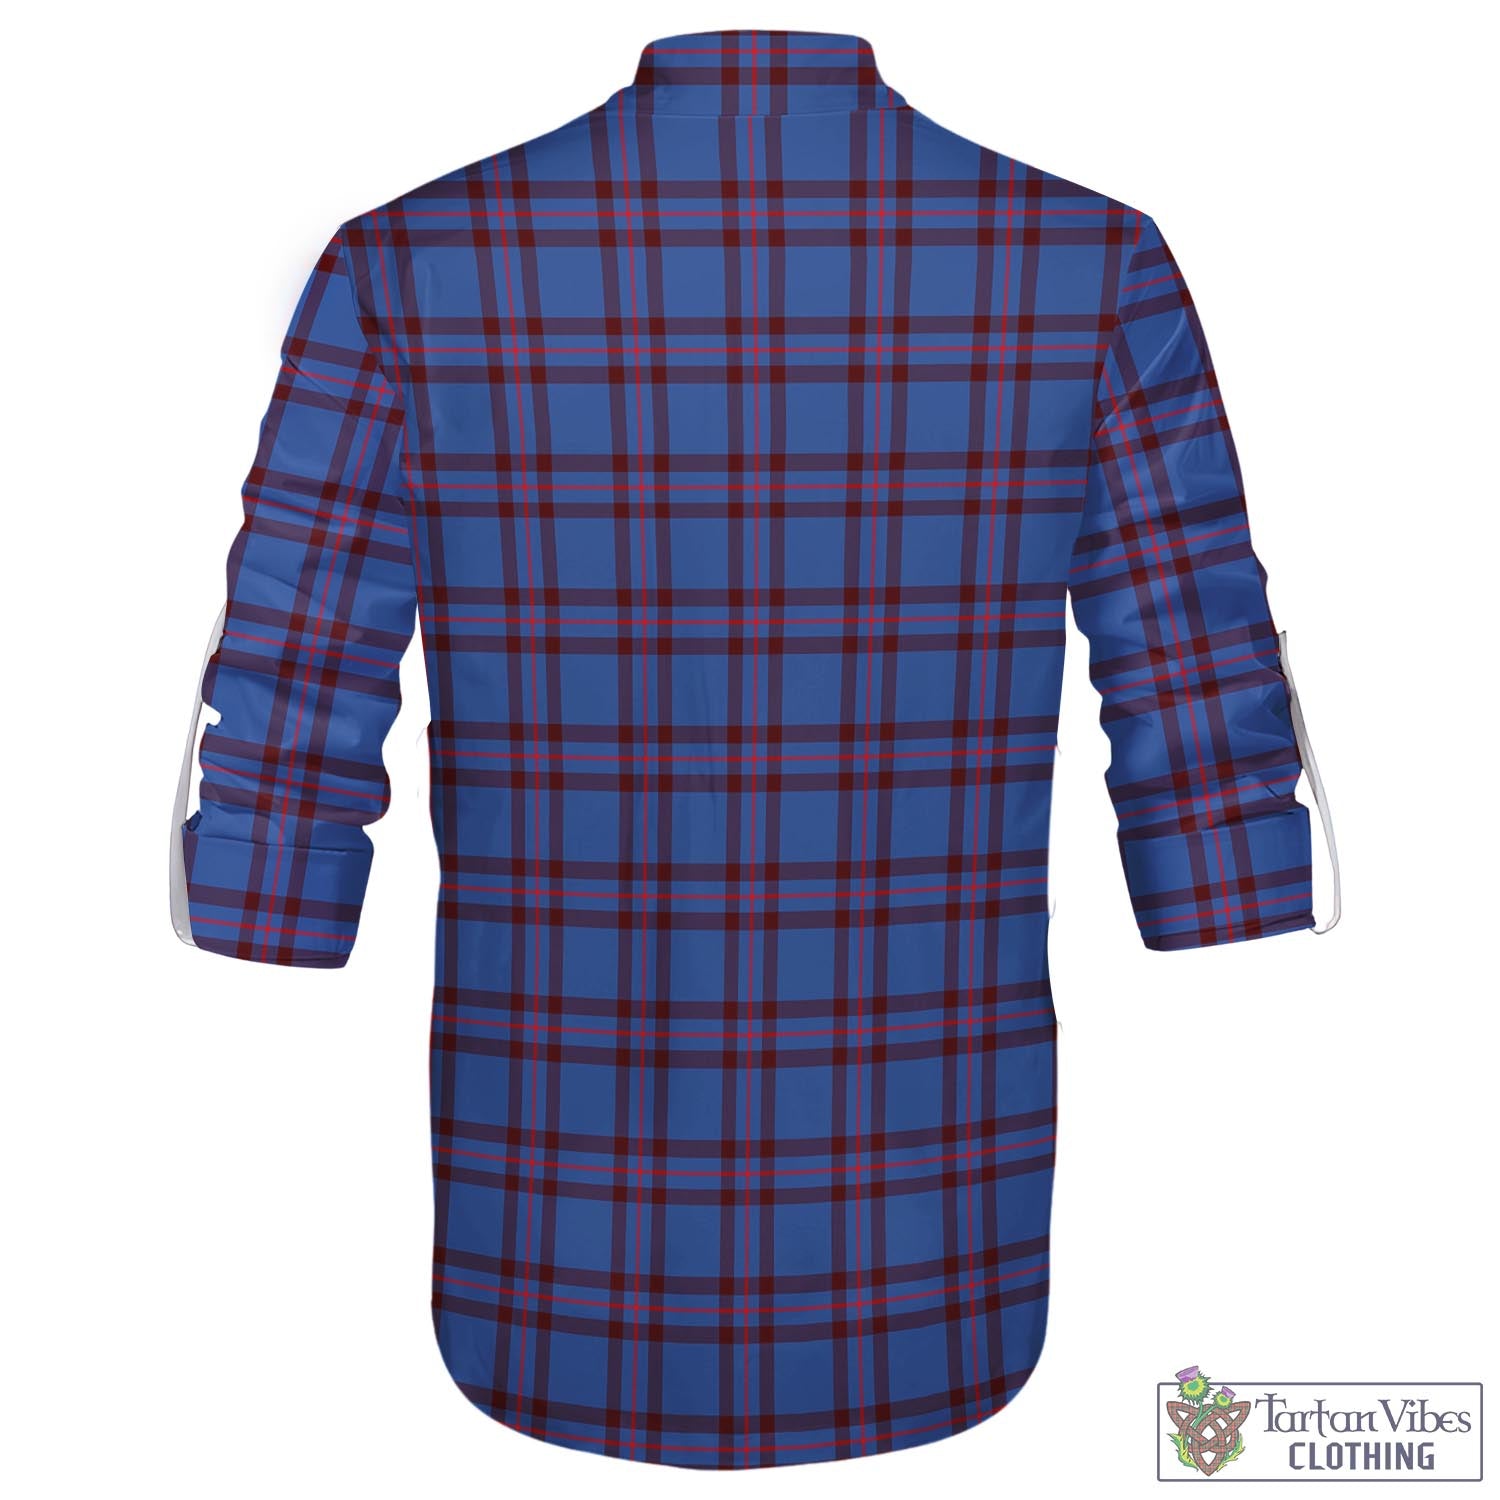 Tartan Vibes Clothing Elliot Modern Tartan Men's Scottish Traditional Jacobite Ghillie Kilt Shirt